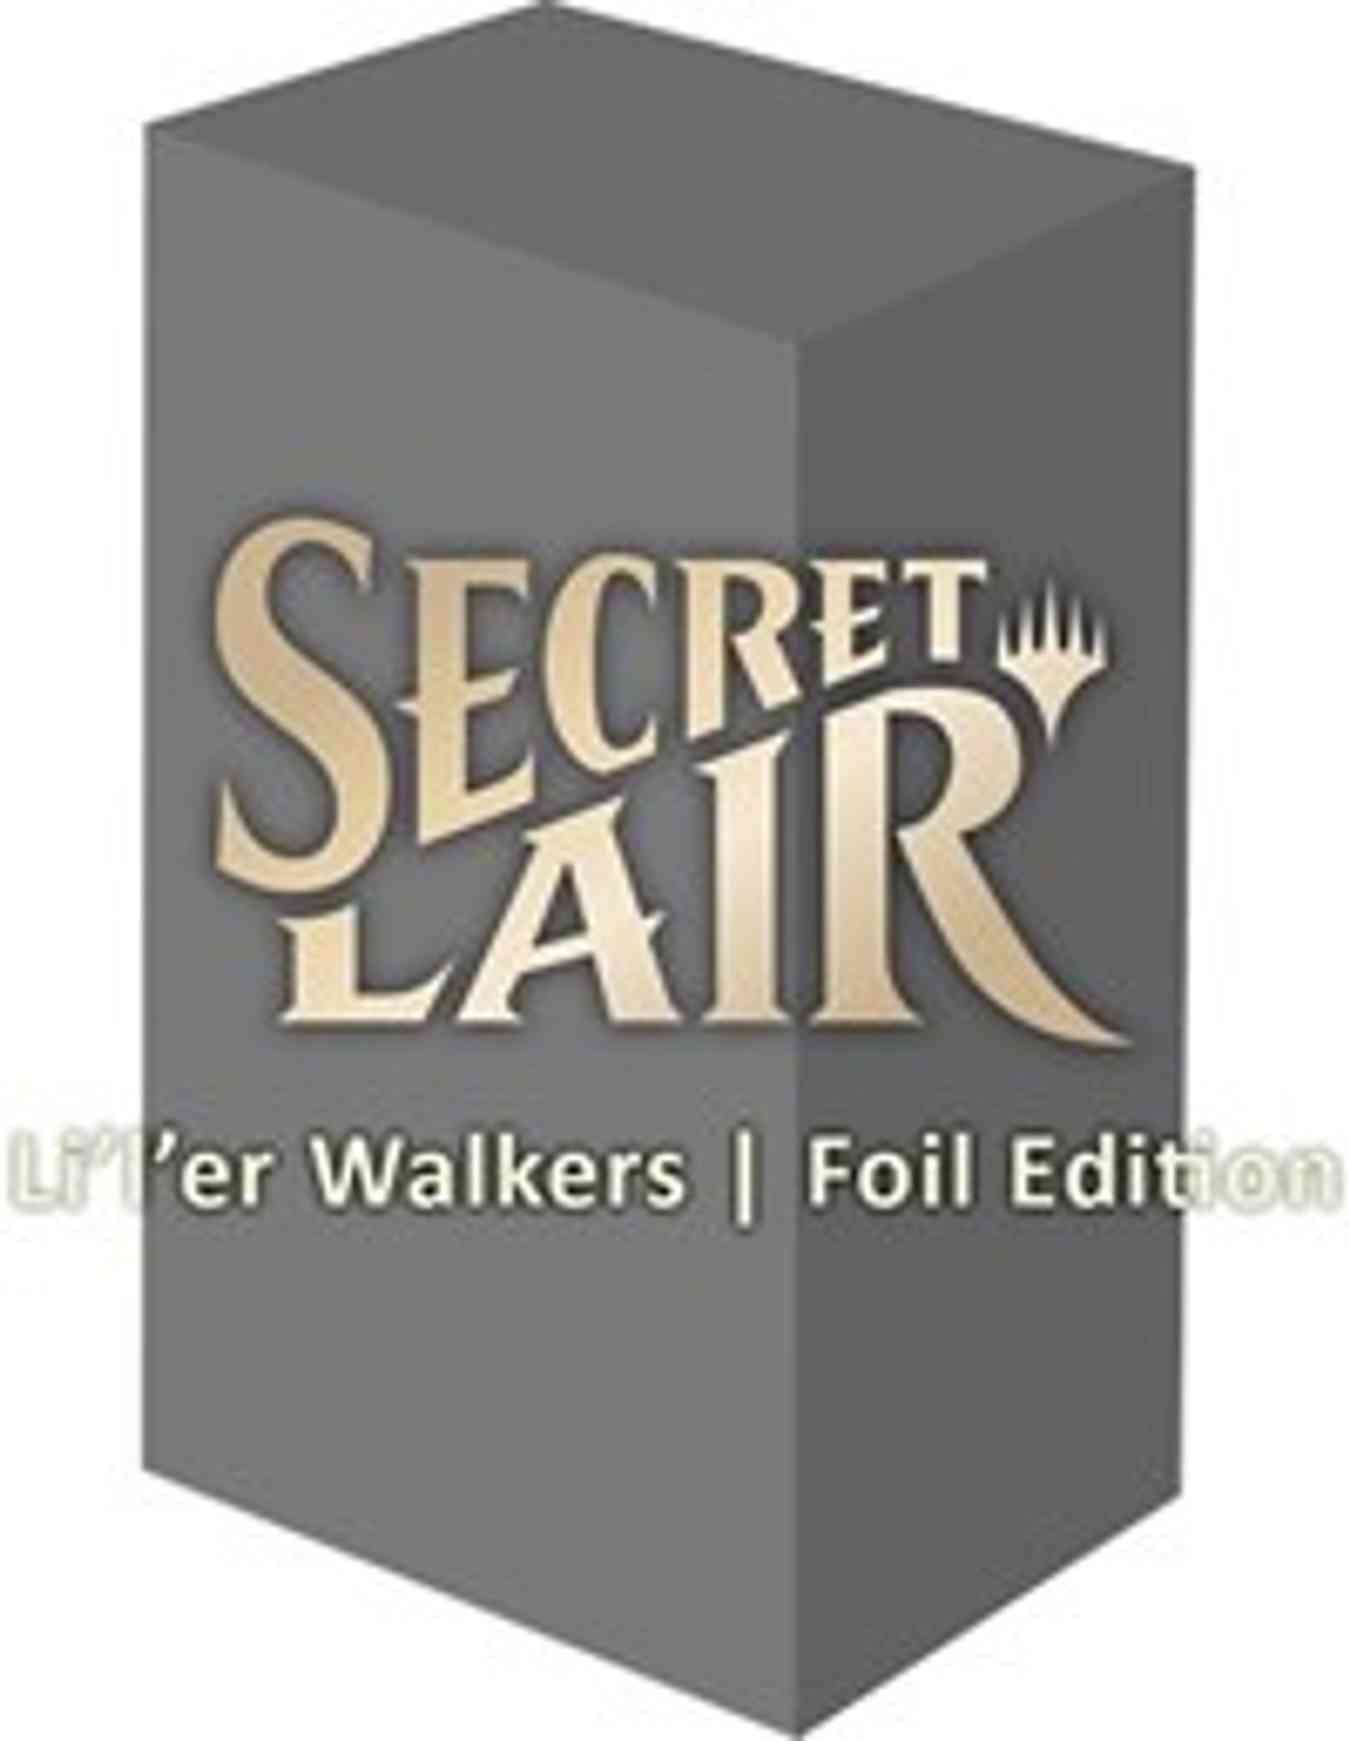 Secret Lair Drop: Li'l'est Walkers - Foil Edition Price from mtg